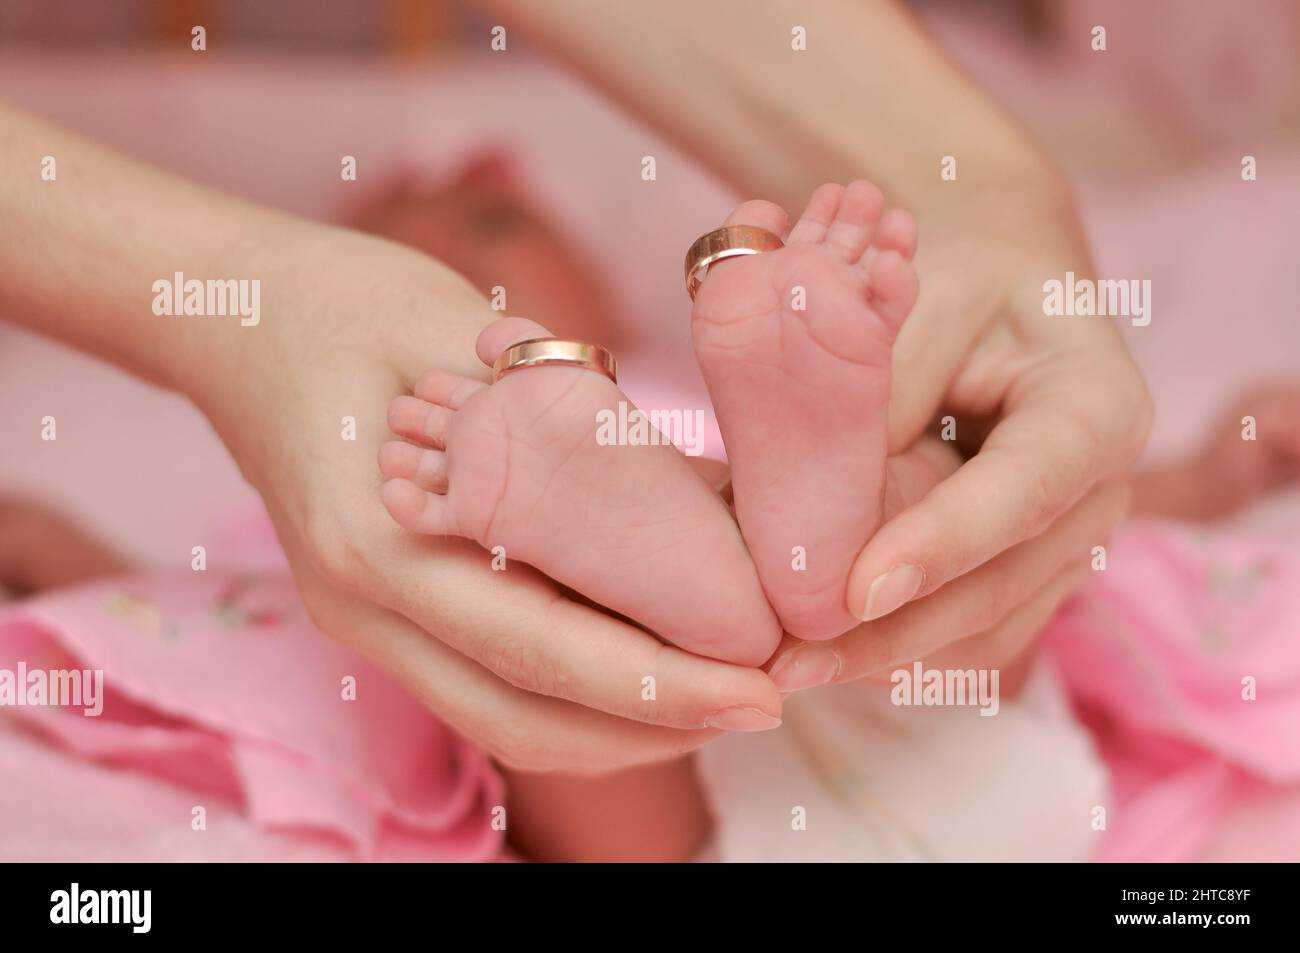 las piernas del bebé están en las manos de la madre. anillos de boda dorados en los dedos de los pies del bebé. concepto de familia o boda Foto de stock